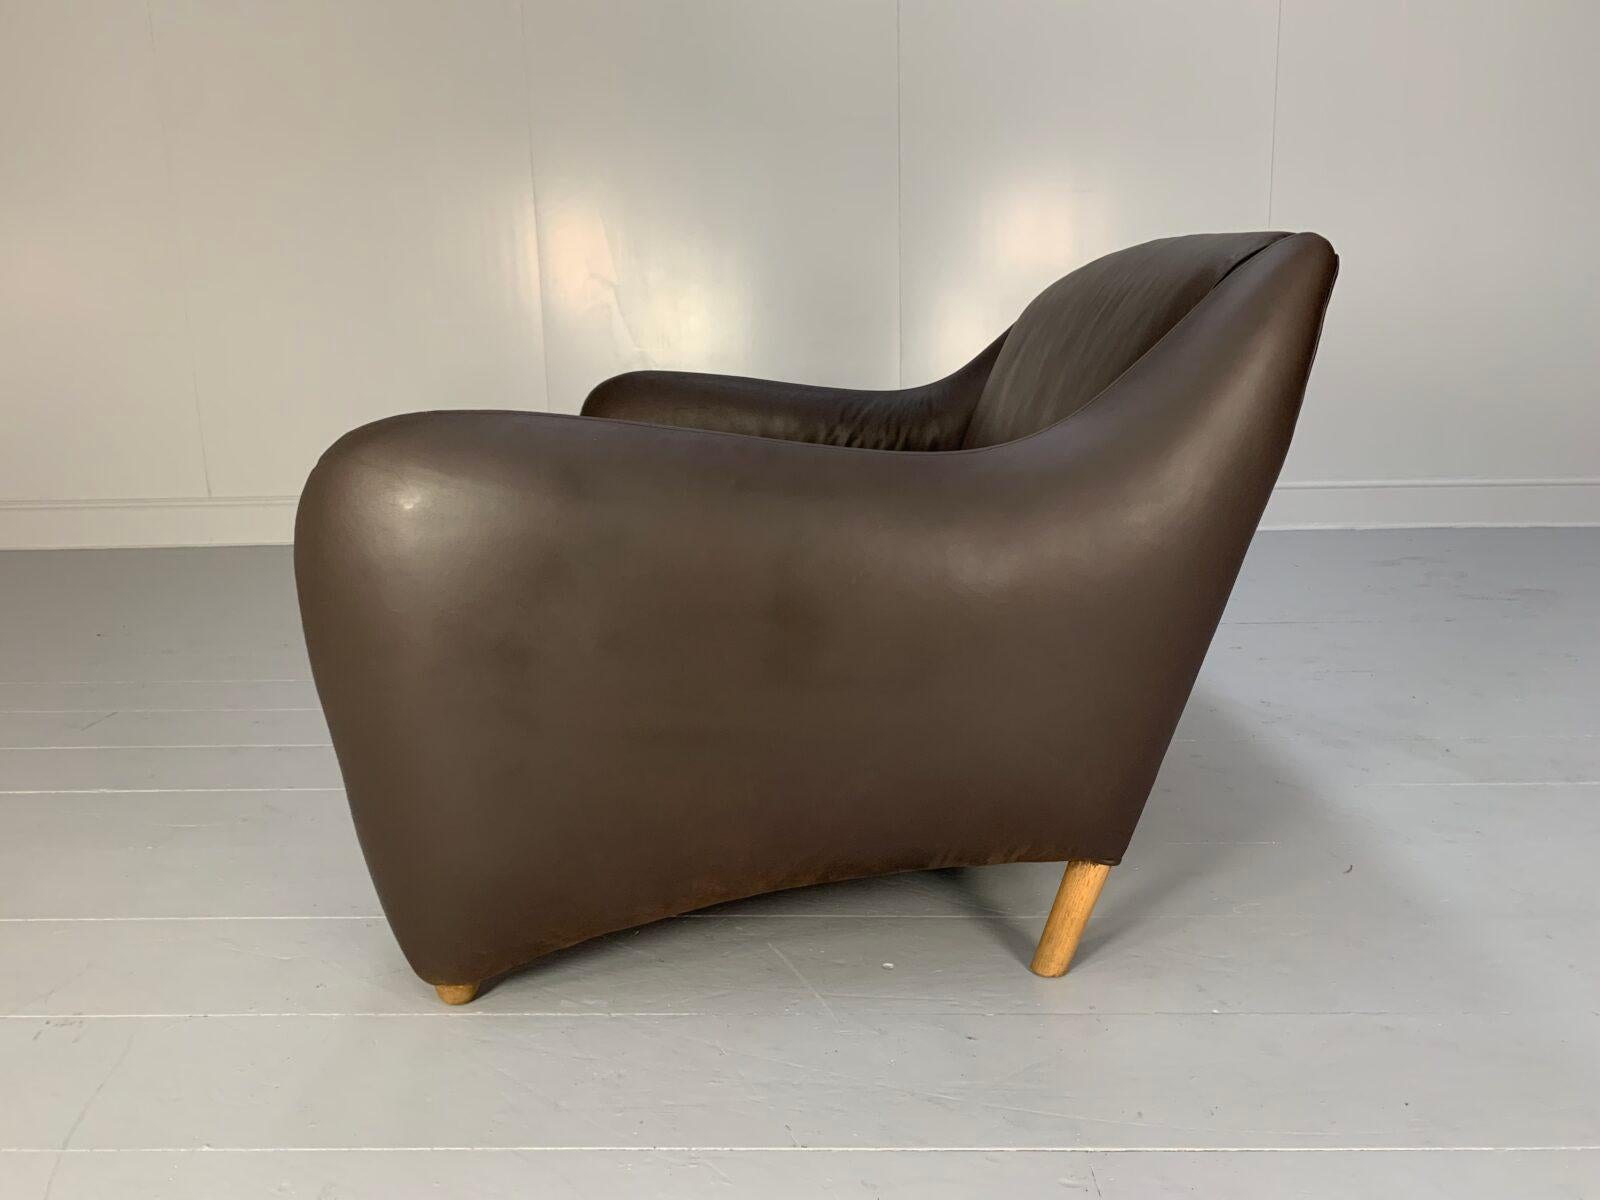 Contemporary SCP Conran Matthew Hilton “Balzac” 2-Seat Sofa – In Dark Brown Leather